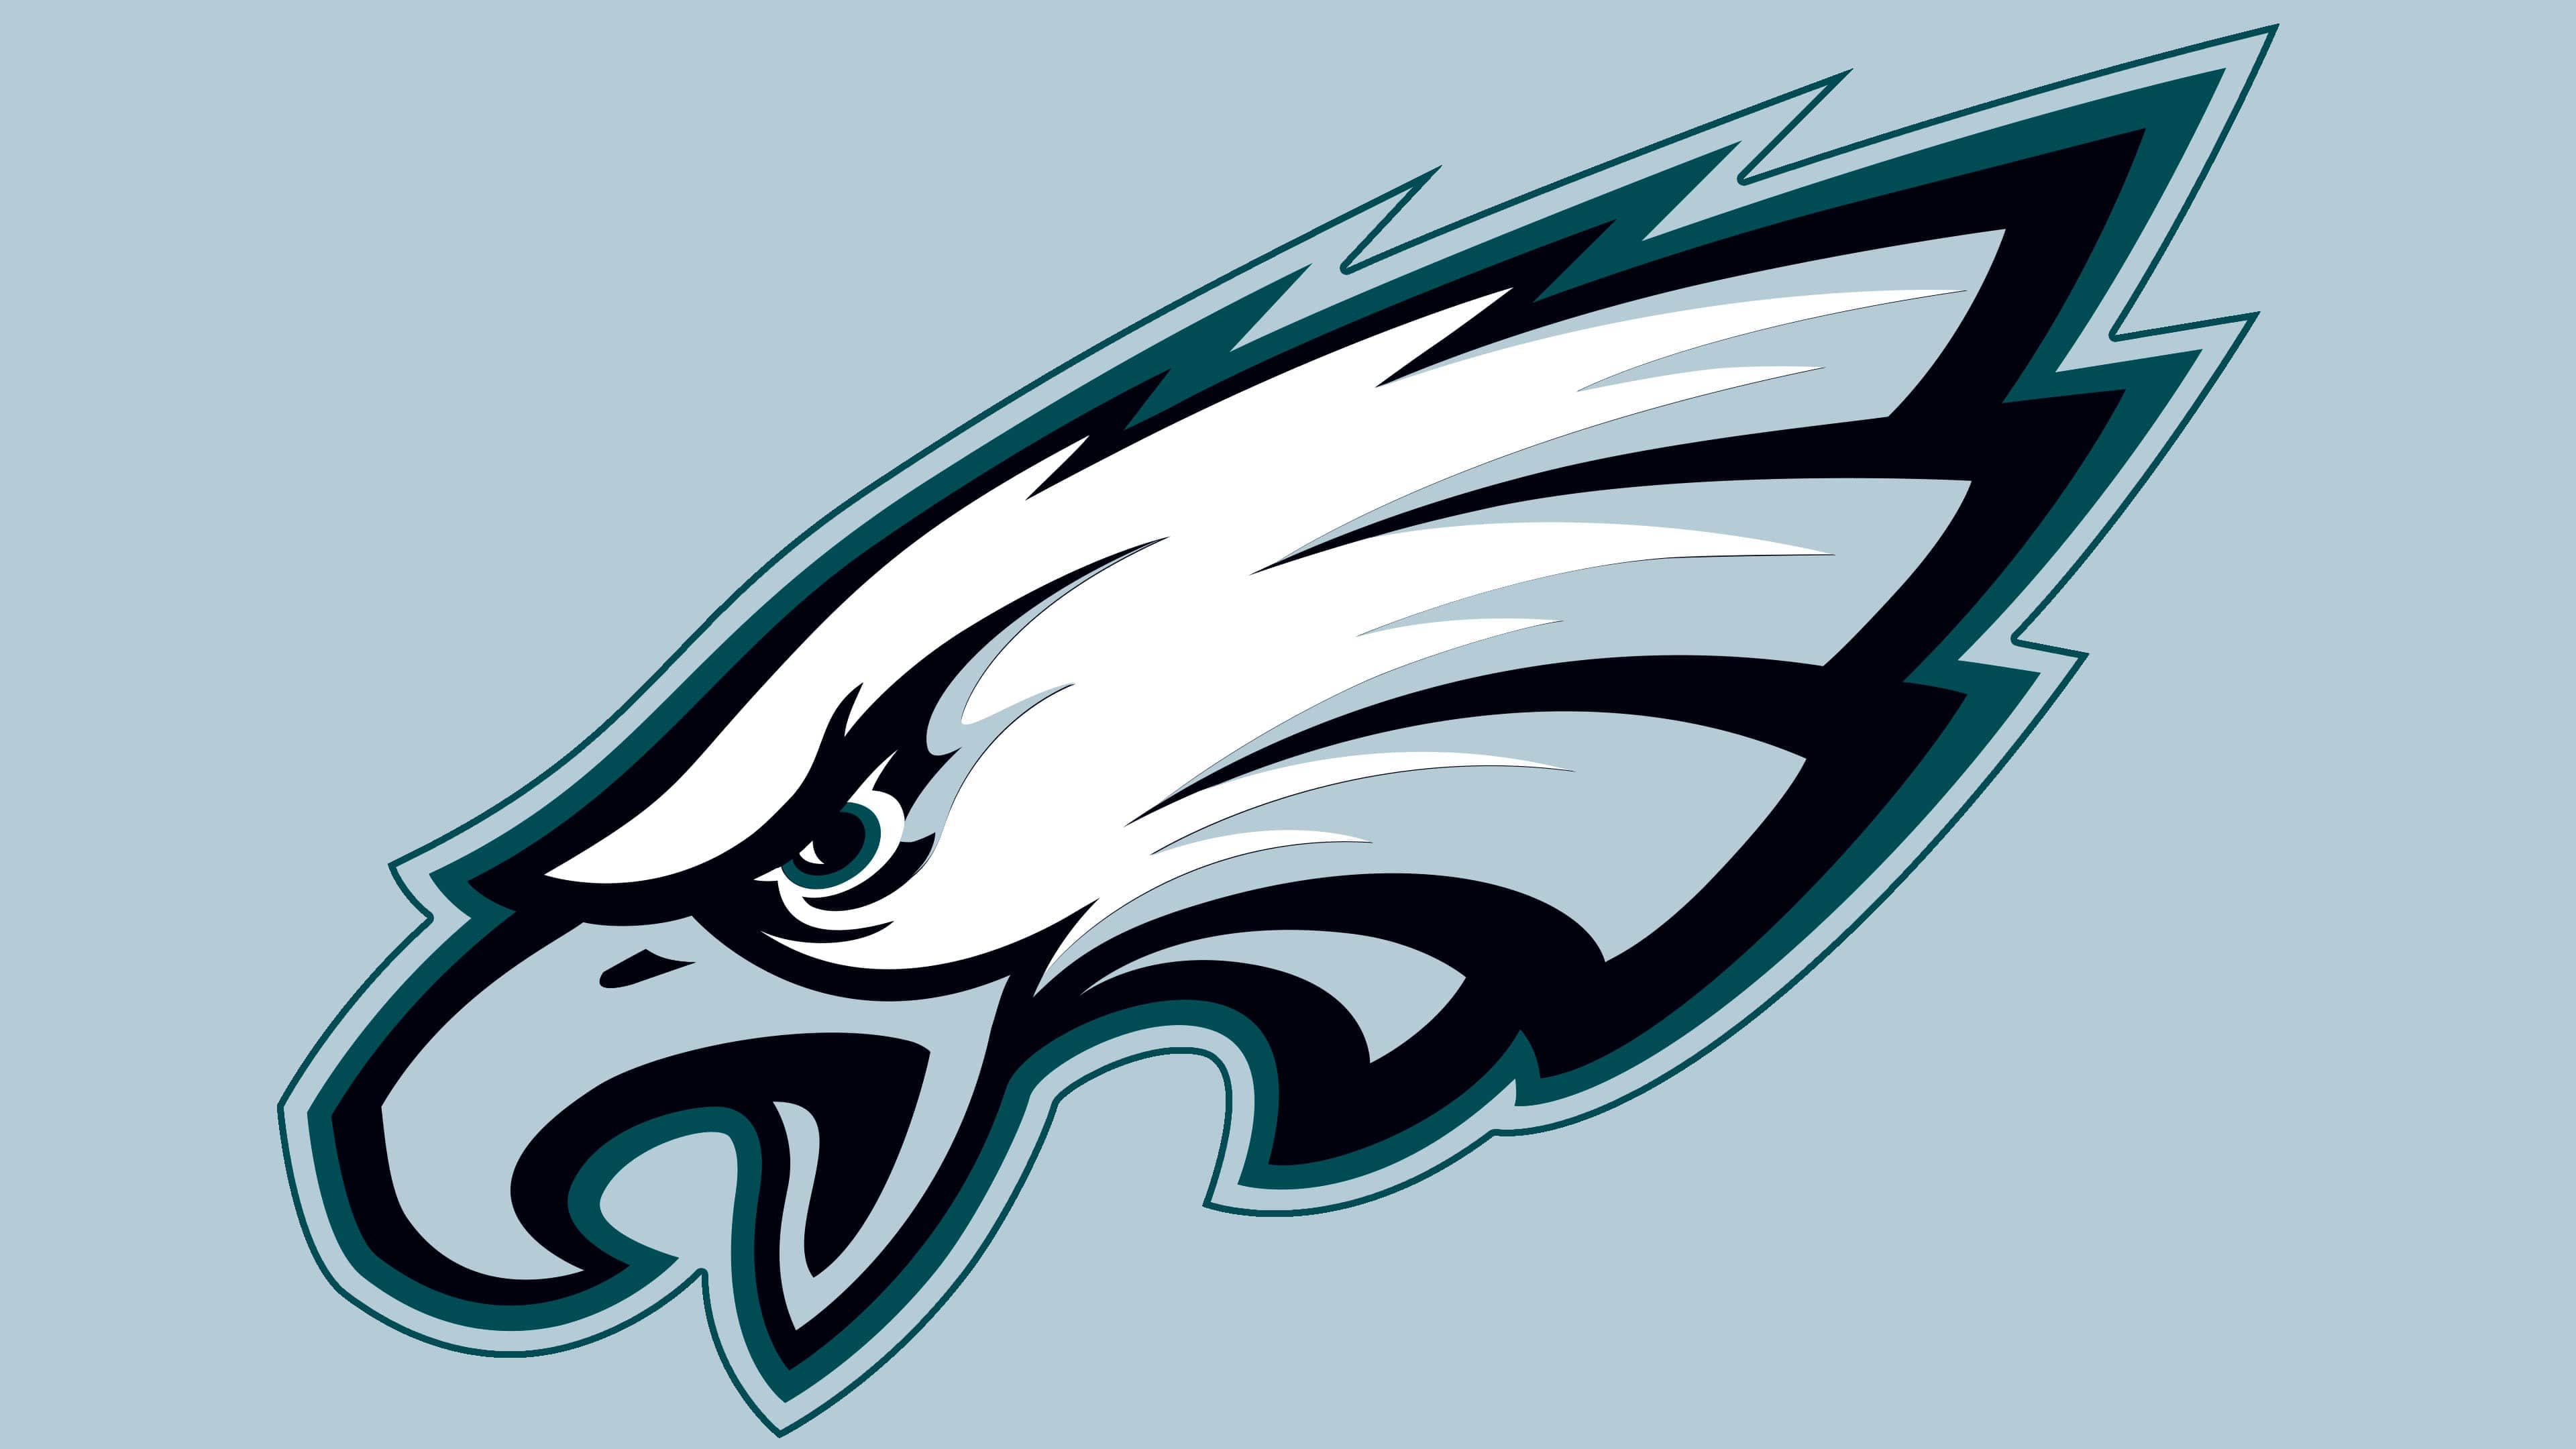 formación En consecuencia teléfono Philadelphia Eagles Logo, symbol, meaning, history, PNG, brand